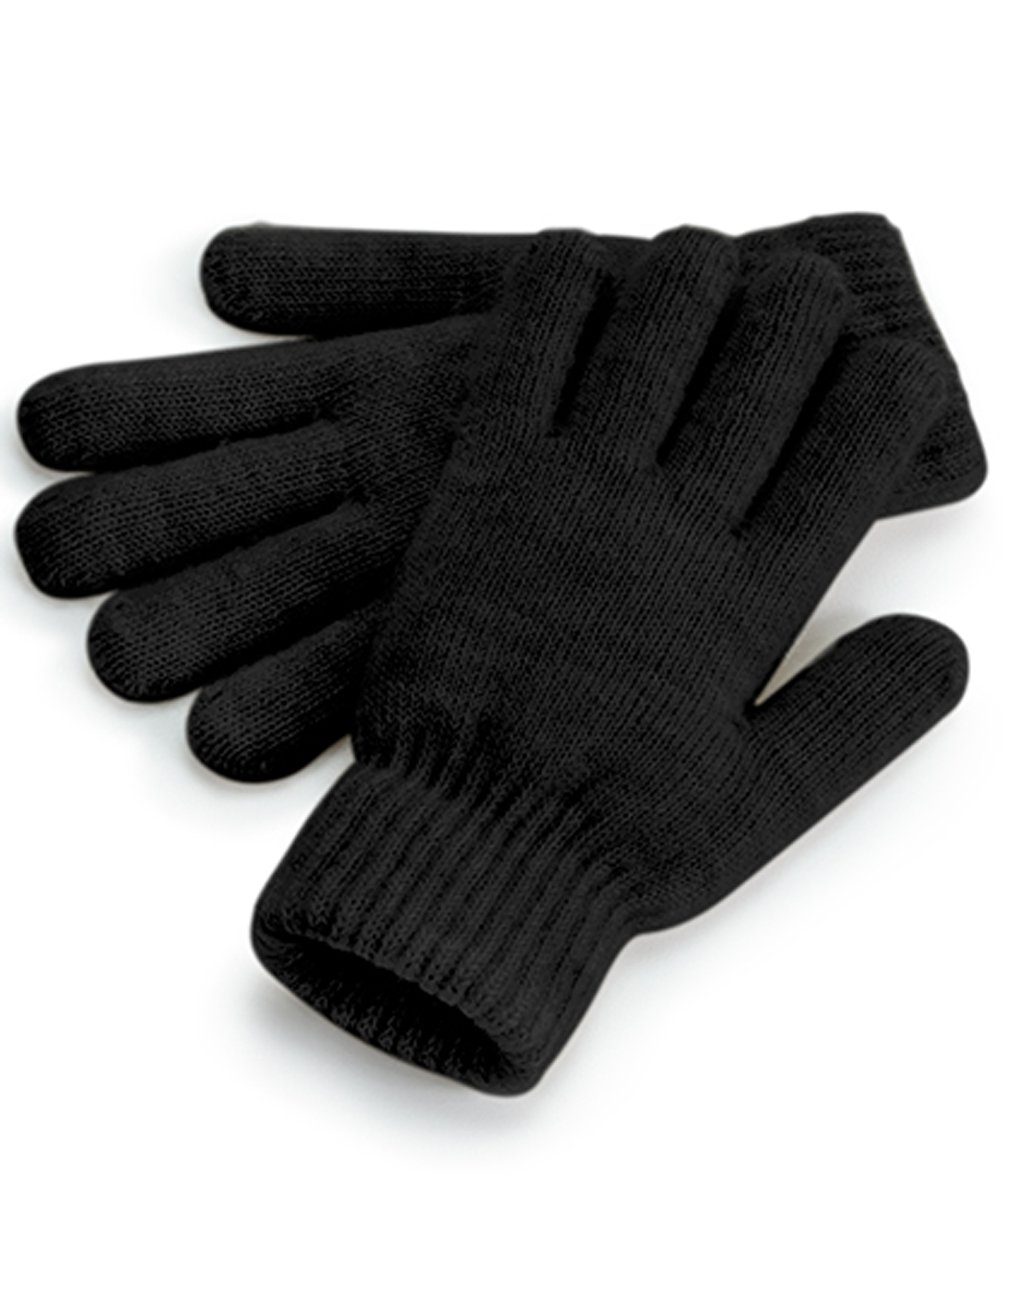 Damen Winterhandschuhe Strickhandschuhe Schwarz Warme / Handschuhe / Gerippter Ärmelabschluss Beechfield® Strickhandschuhe